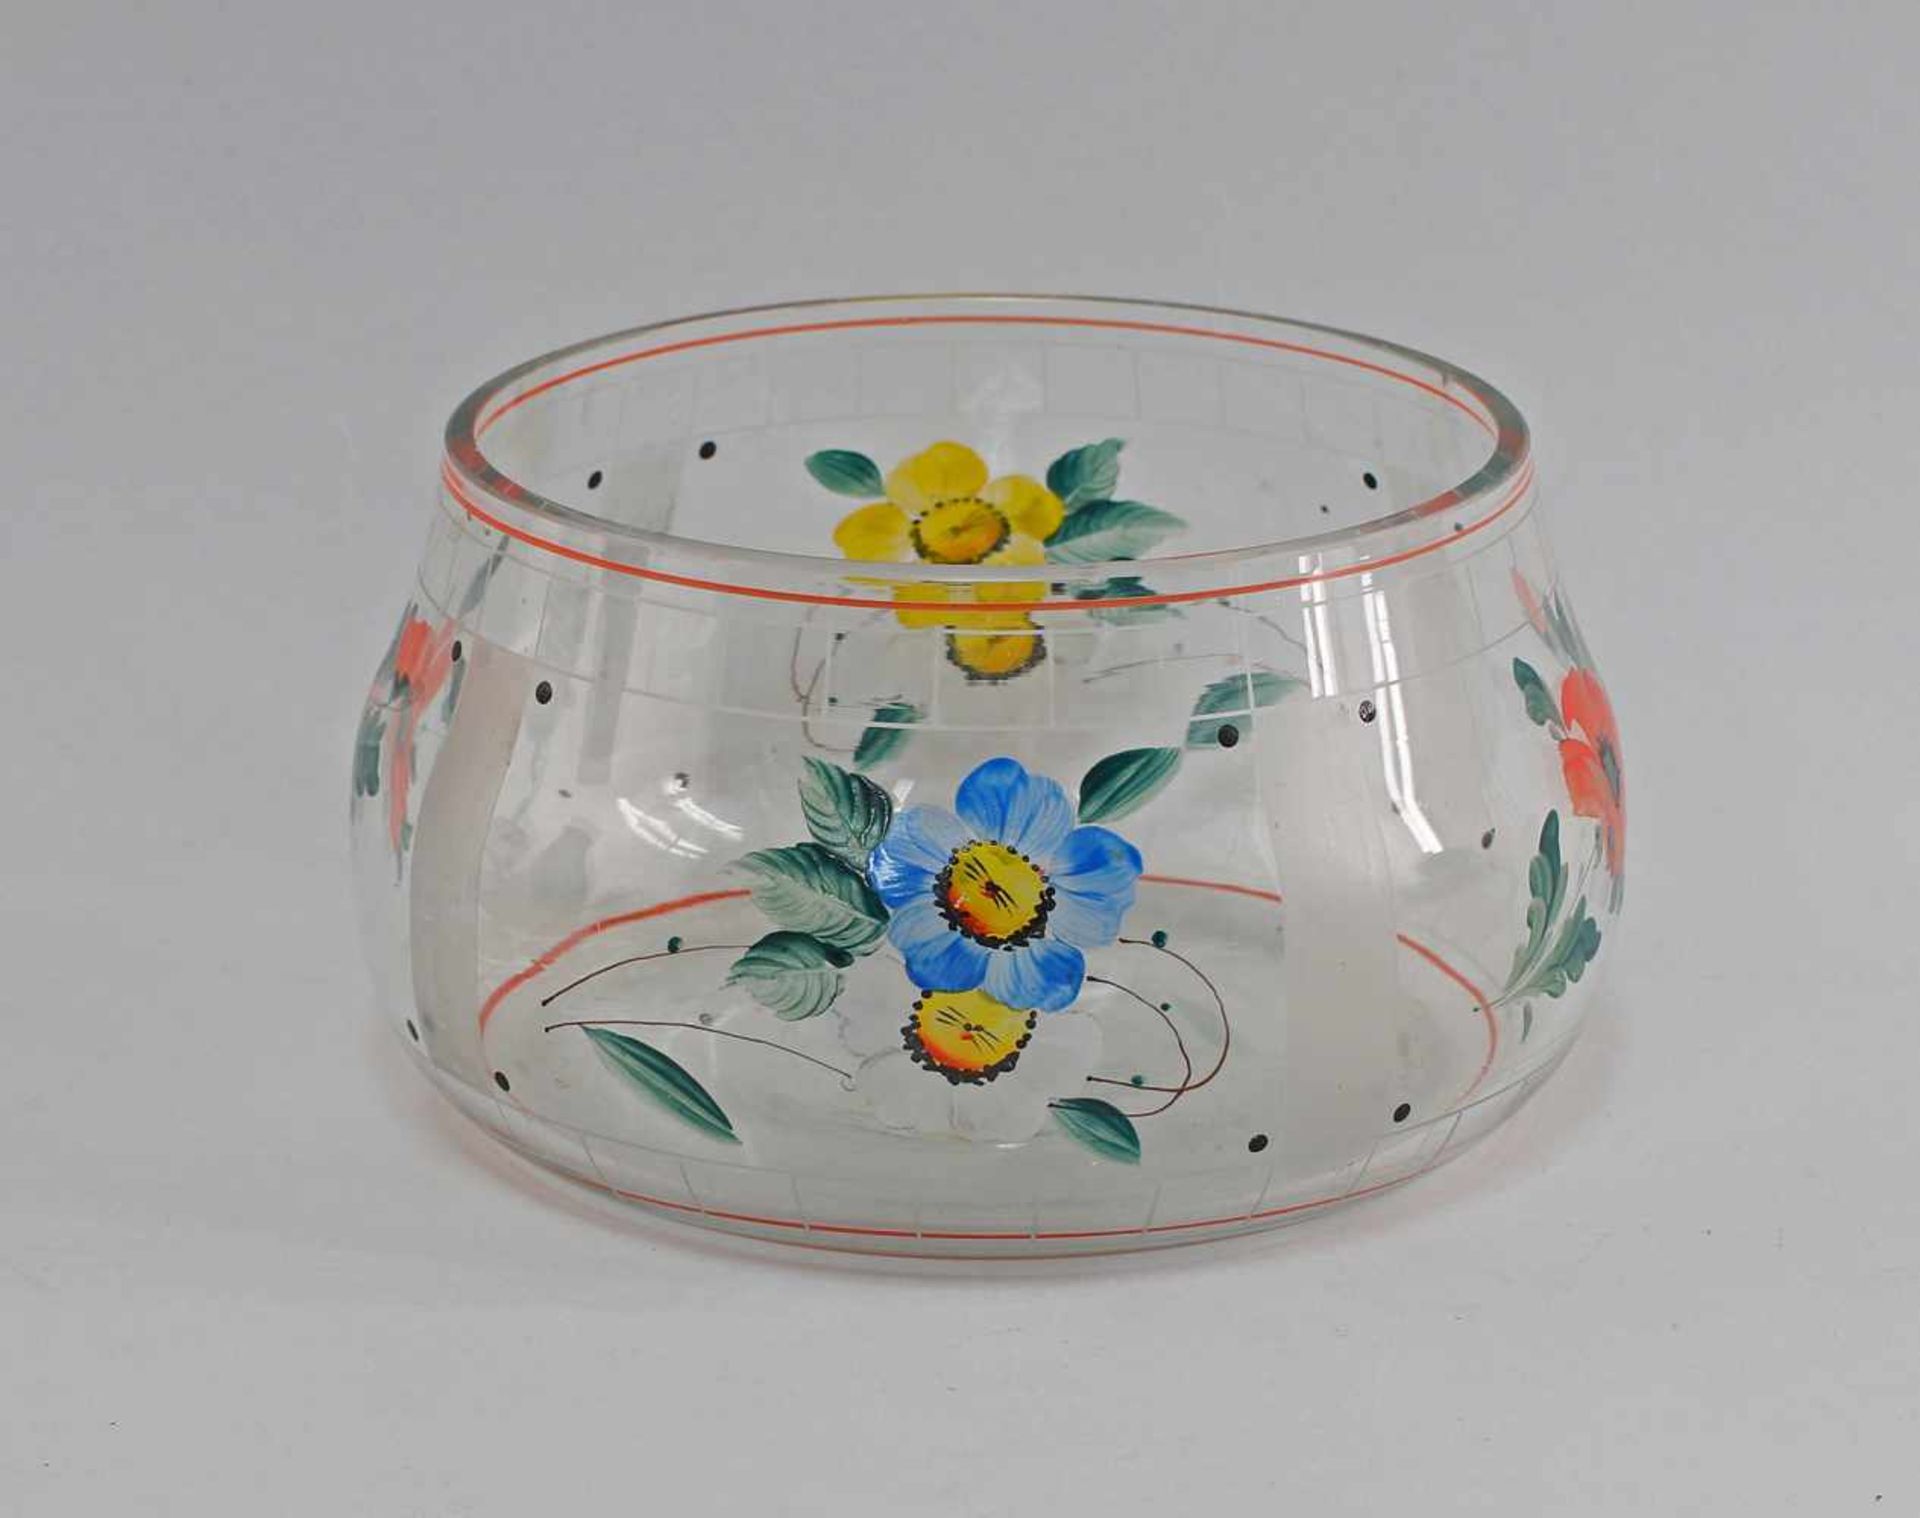 Bamalte Schale 40/60er Jahre, farbloses Glas formgeblasen, farbig bemalt mit Blumendekor, am